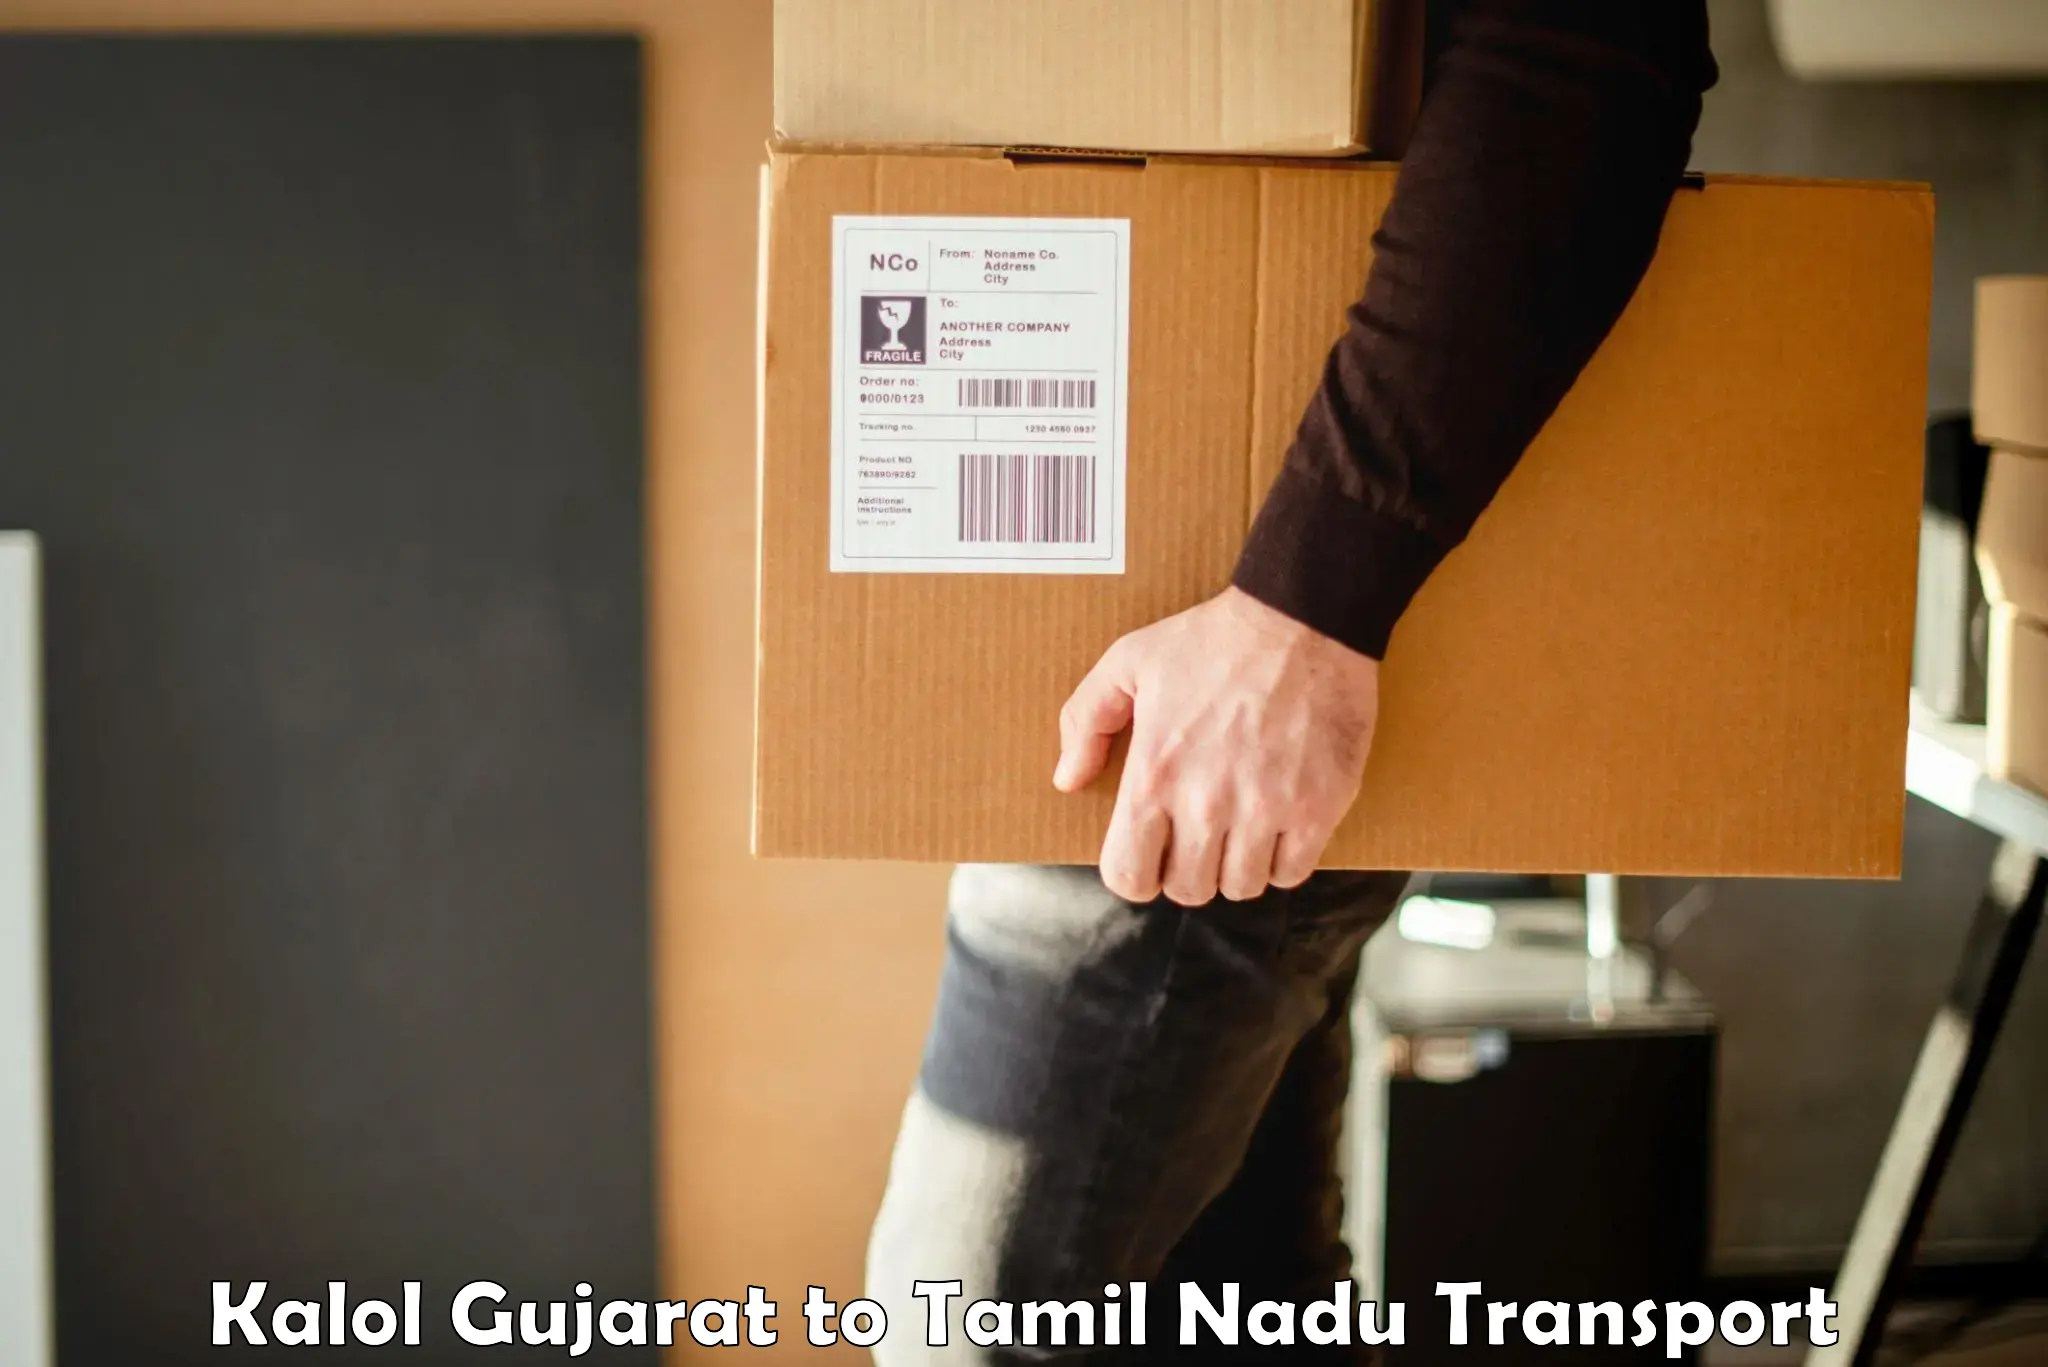 Furniture transport service Kalol Gujarat to Thanjavur